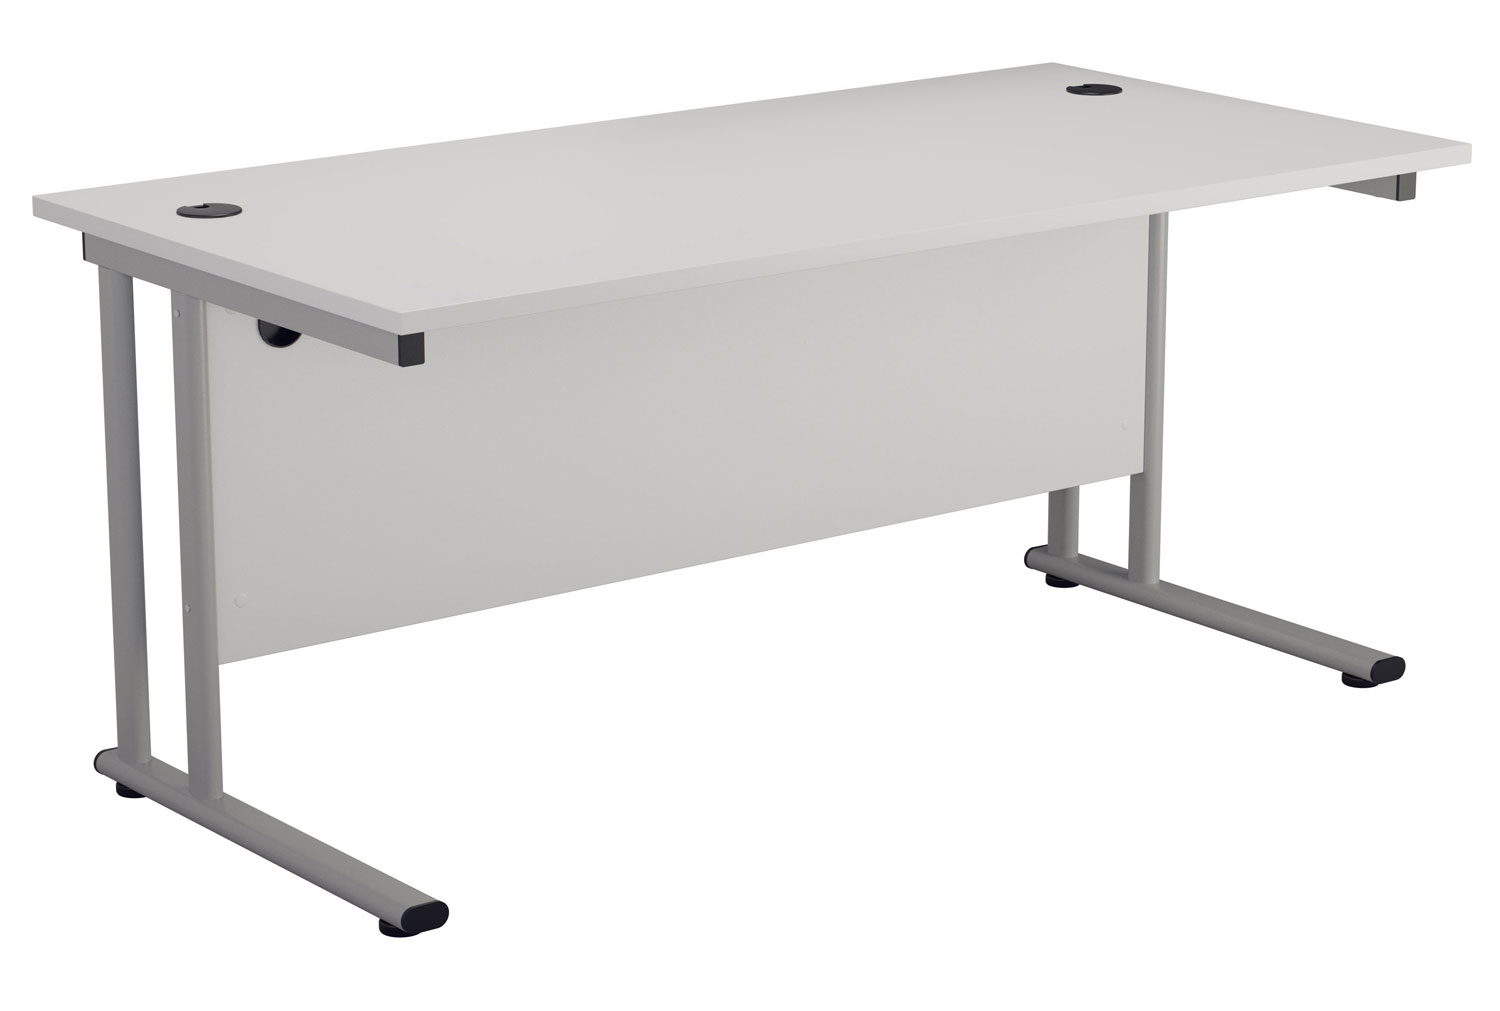 Impulse Rectangular Office Desk, 160wx80dx73h (cm), Silver Frame, White